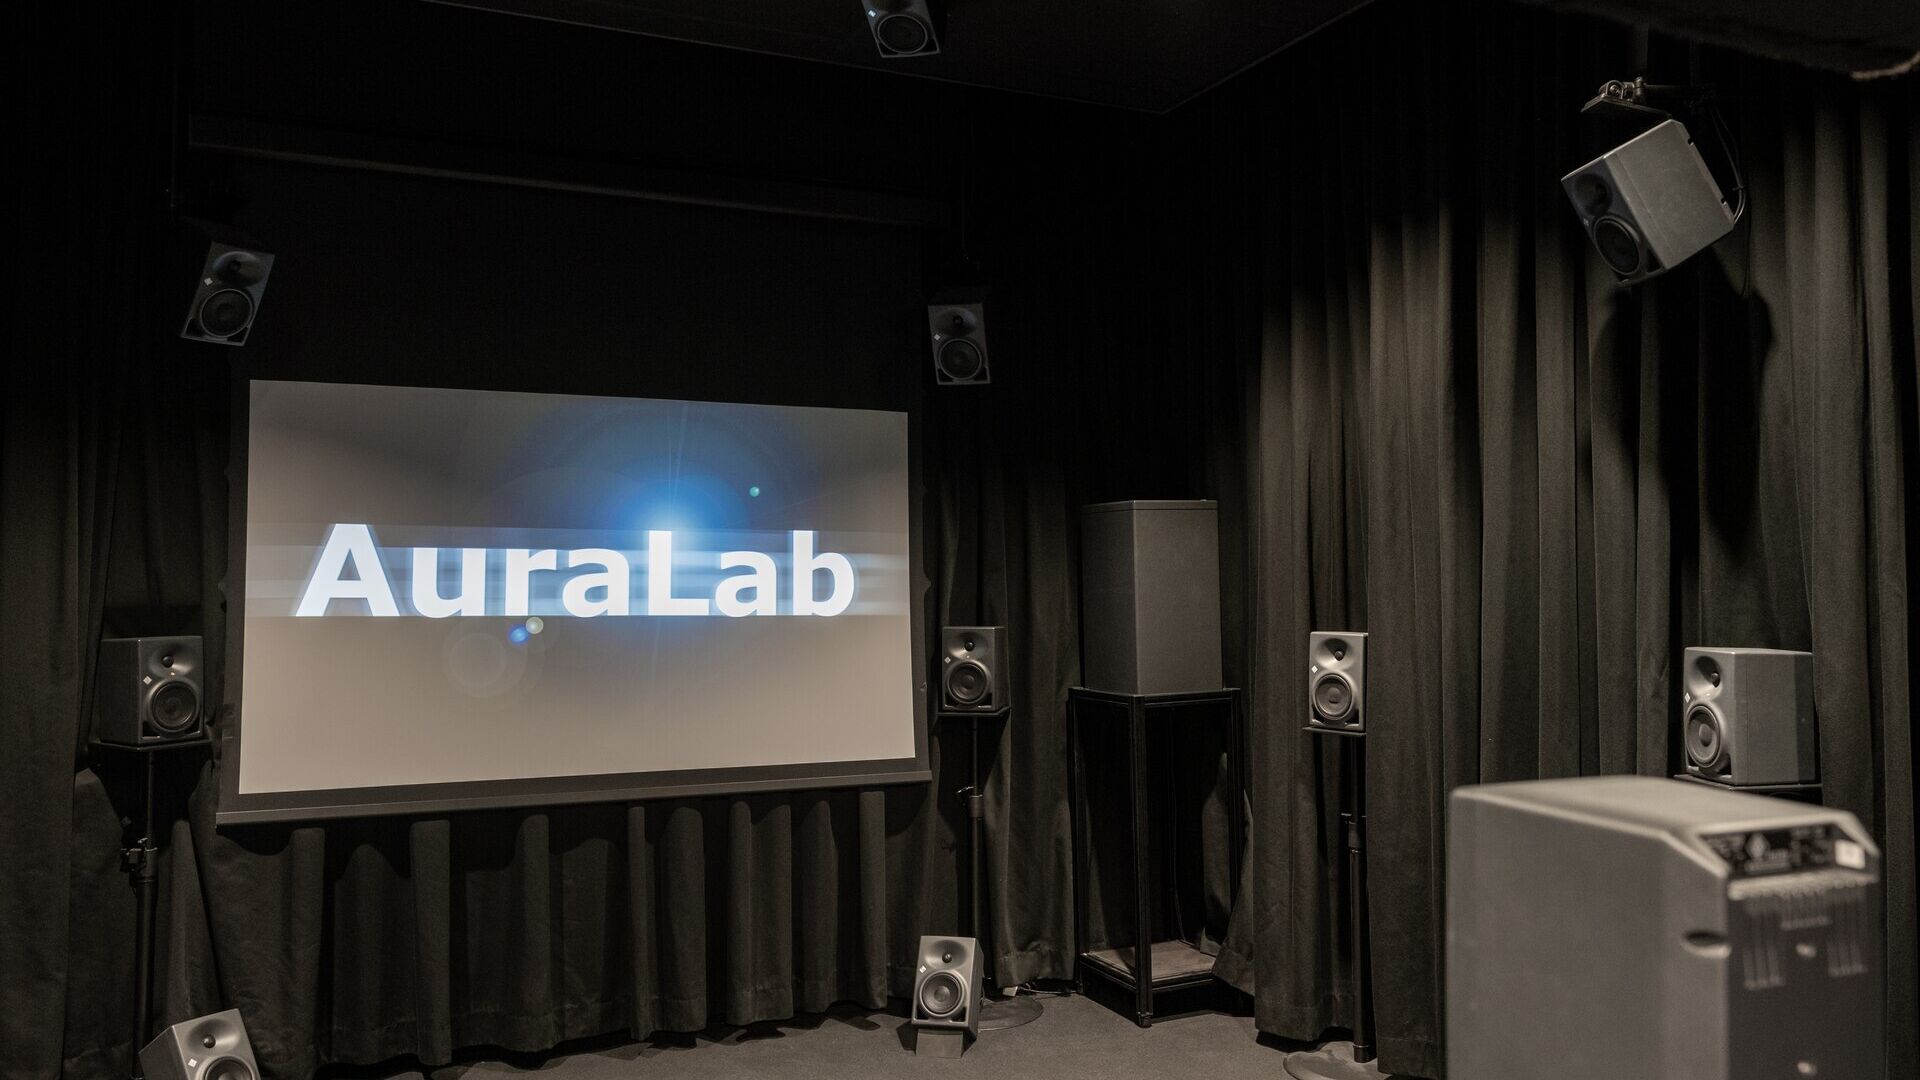 Hrup: V laboratoriju AuraLab pri EMPA v Švici so Reto Pieren, Axel Heusser in Beat Schäffer izvajali poskuse na letalih prihodnosti